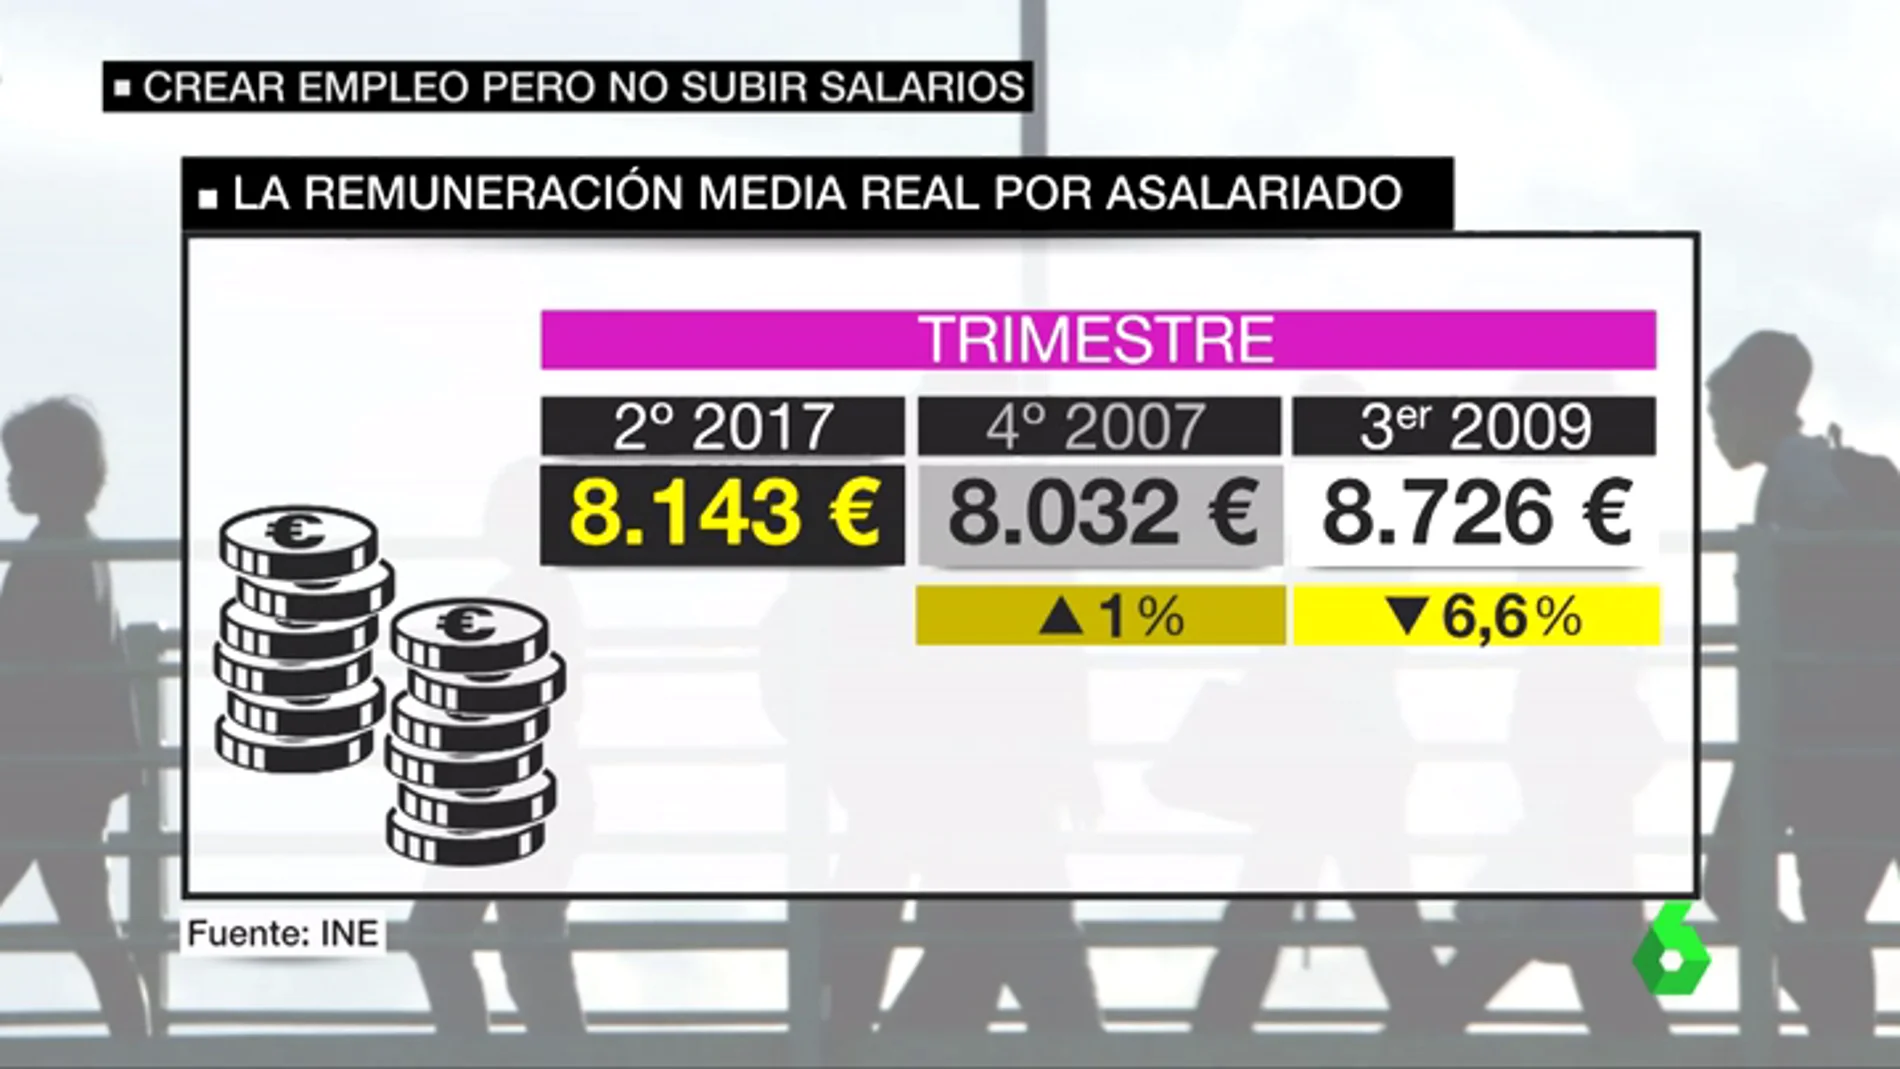 La remuneración media real por asalariado en España